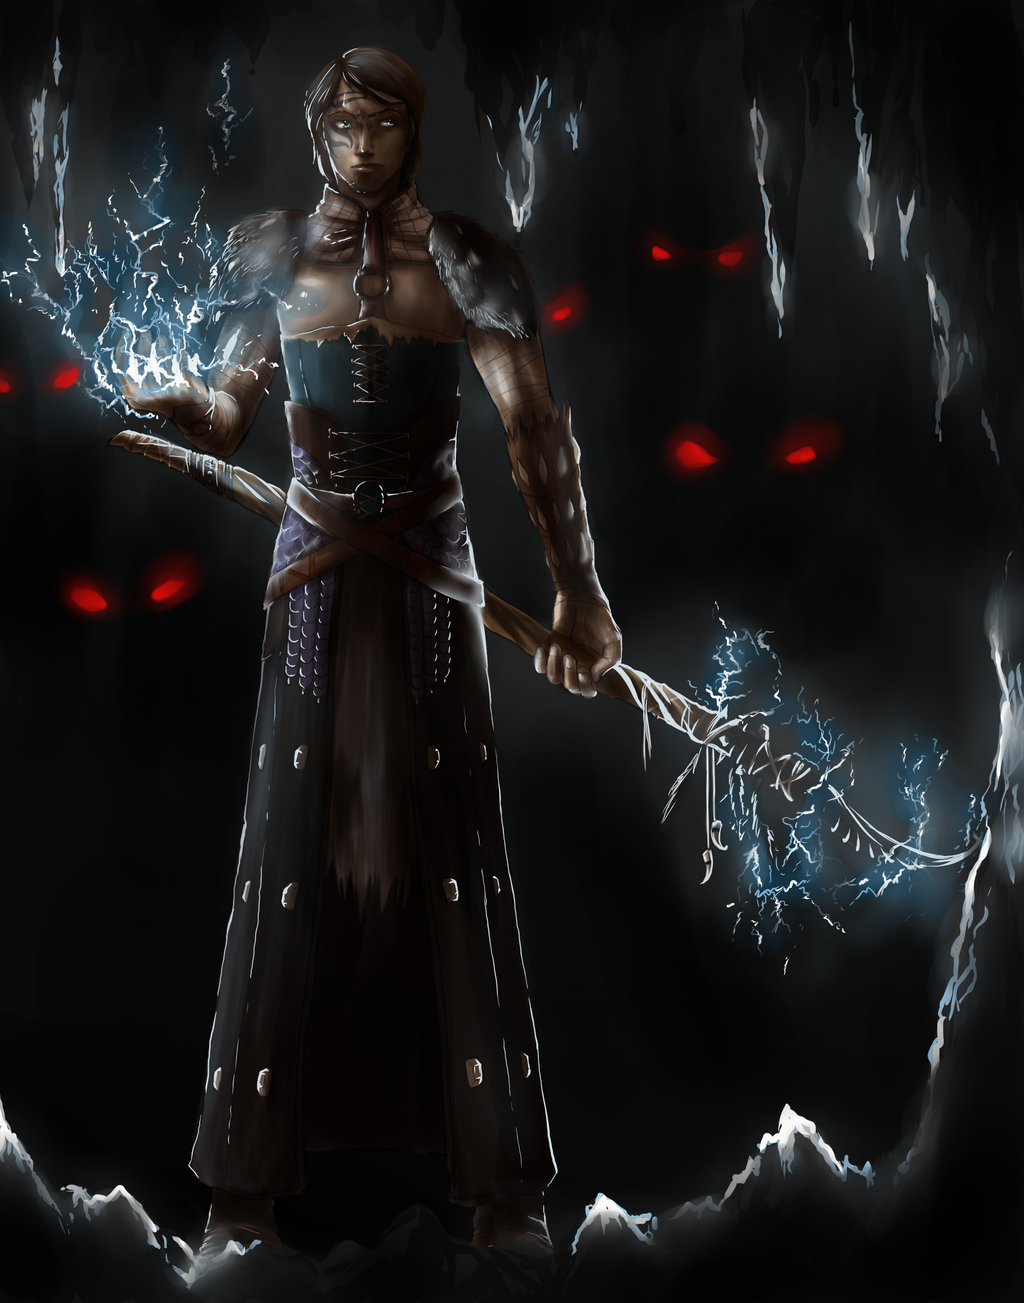 Sense Dark Spawn Da Origins Mage Warden By Nightmarez0mbie On